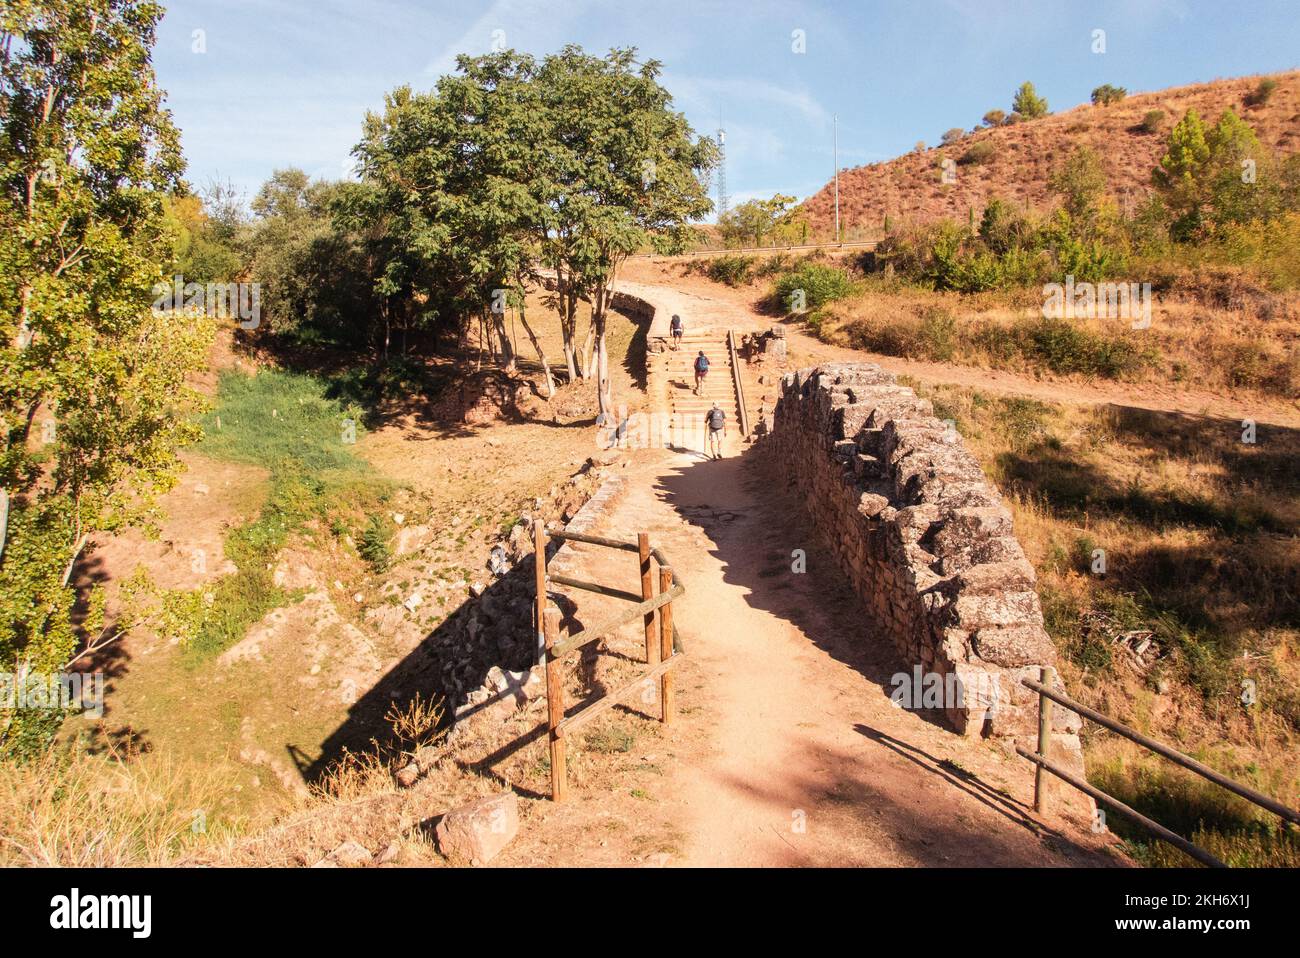 Più vecchio del Camino de Santiago. Fuori del villaggio Cirauqui il St. James Way corre sui resti di un'antica strada romana e di questo ponte romano. Foto Stock